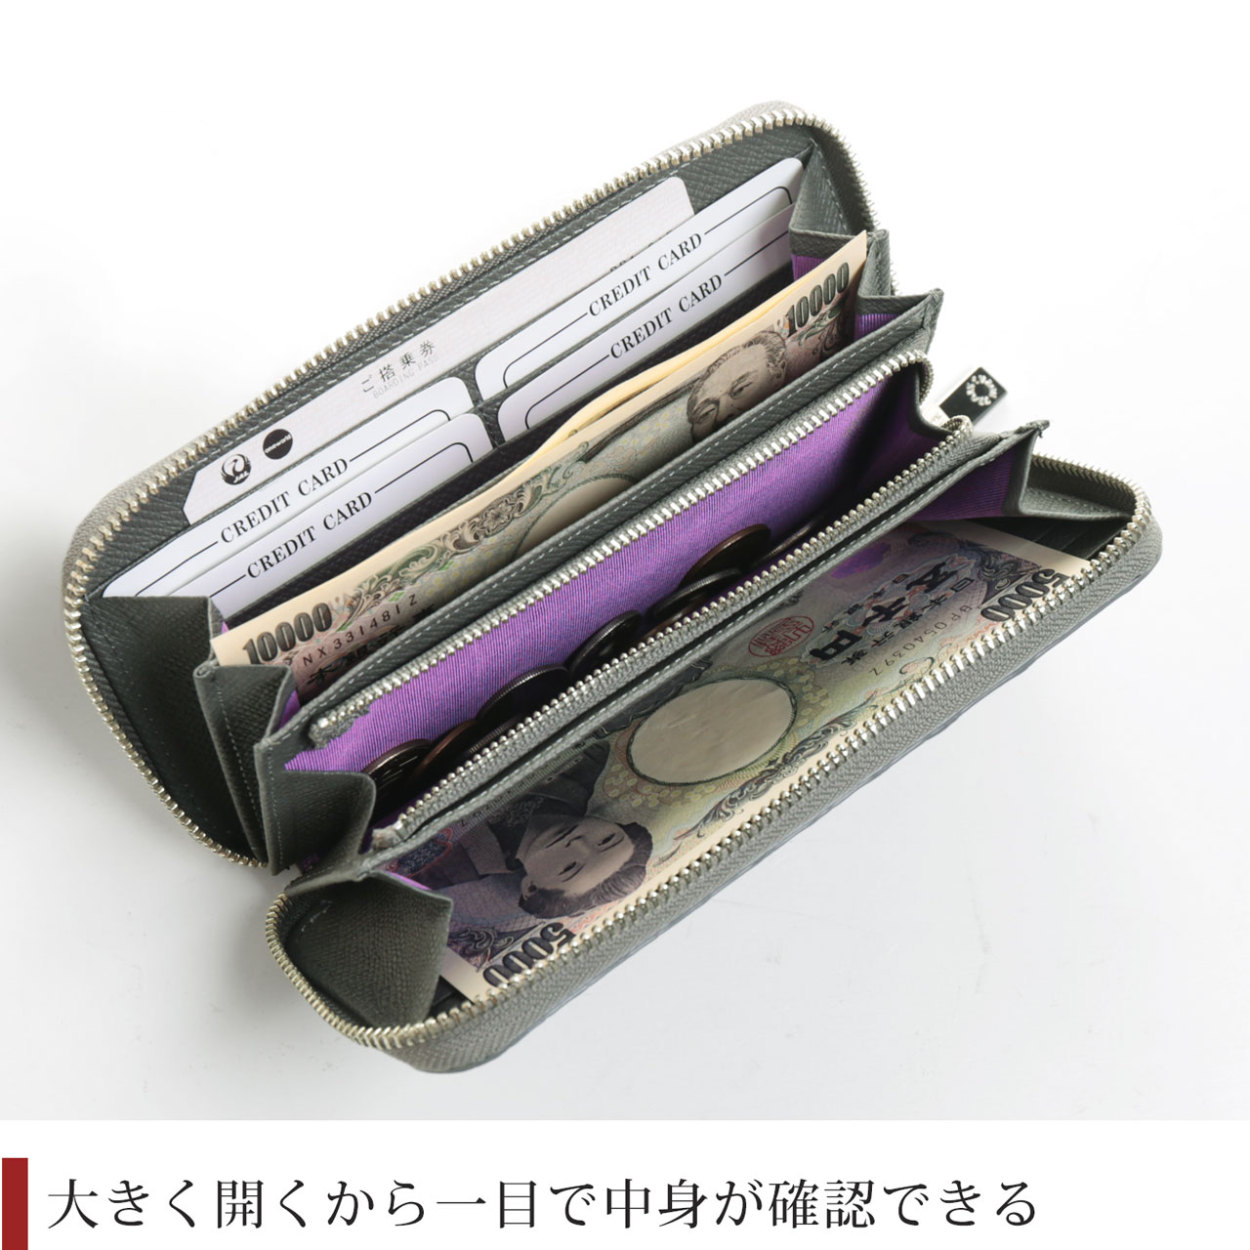 クロコダイル 長財布 レディース ラウンドファスナー 日本製 マット